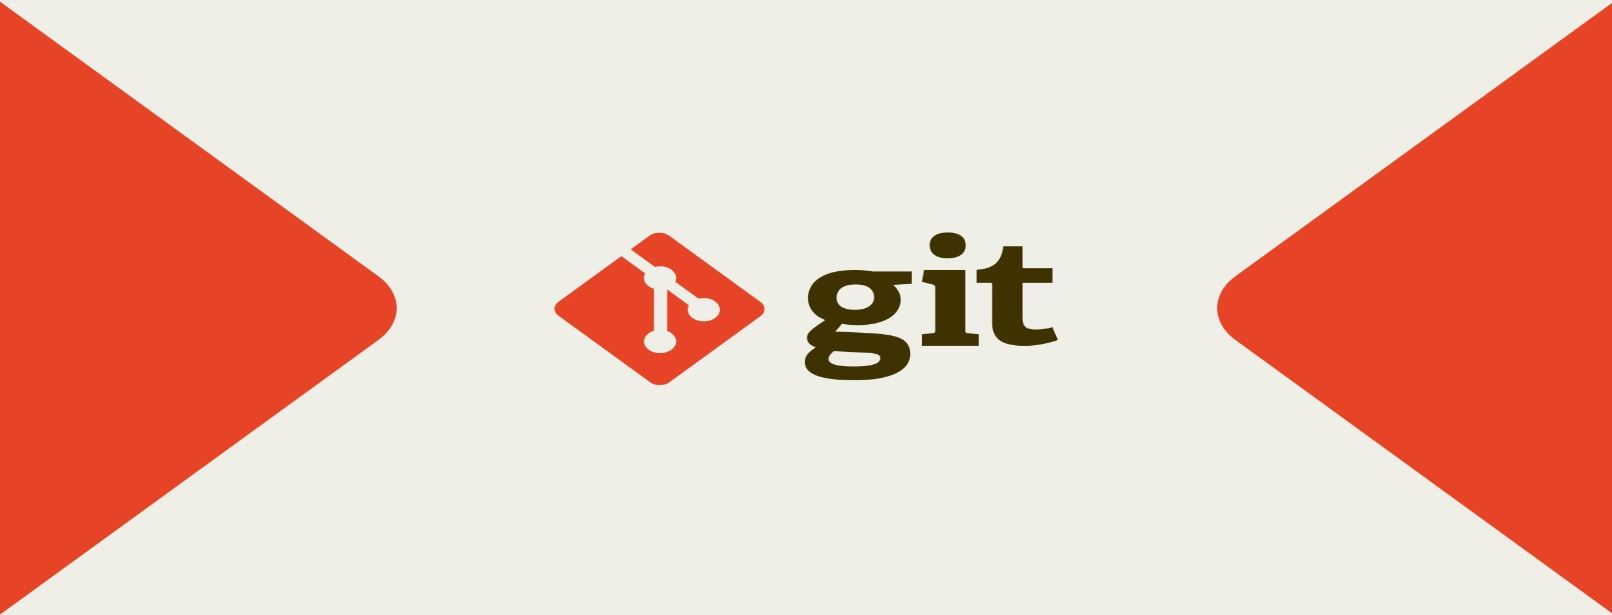 Git چیست؟